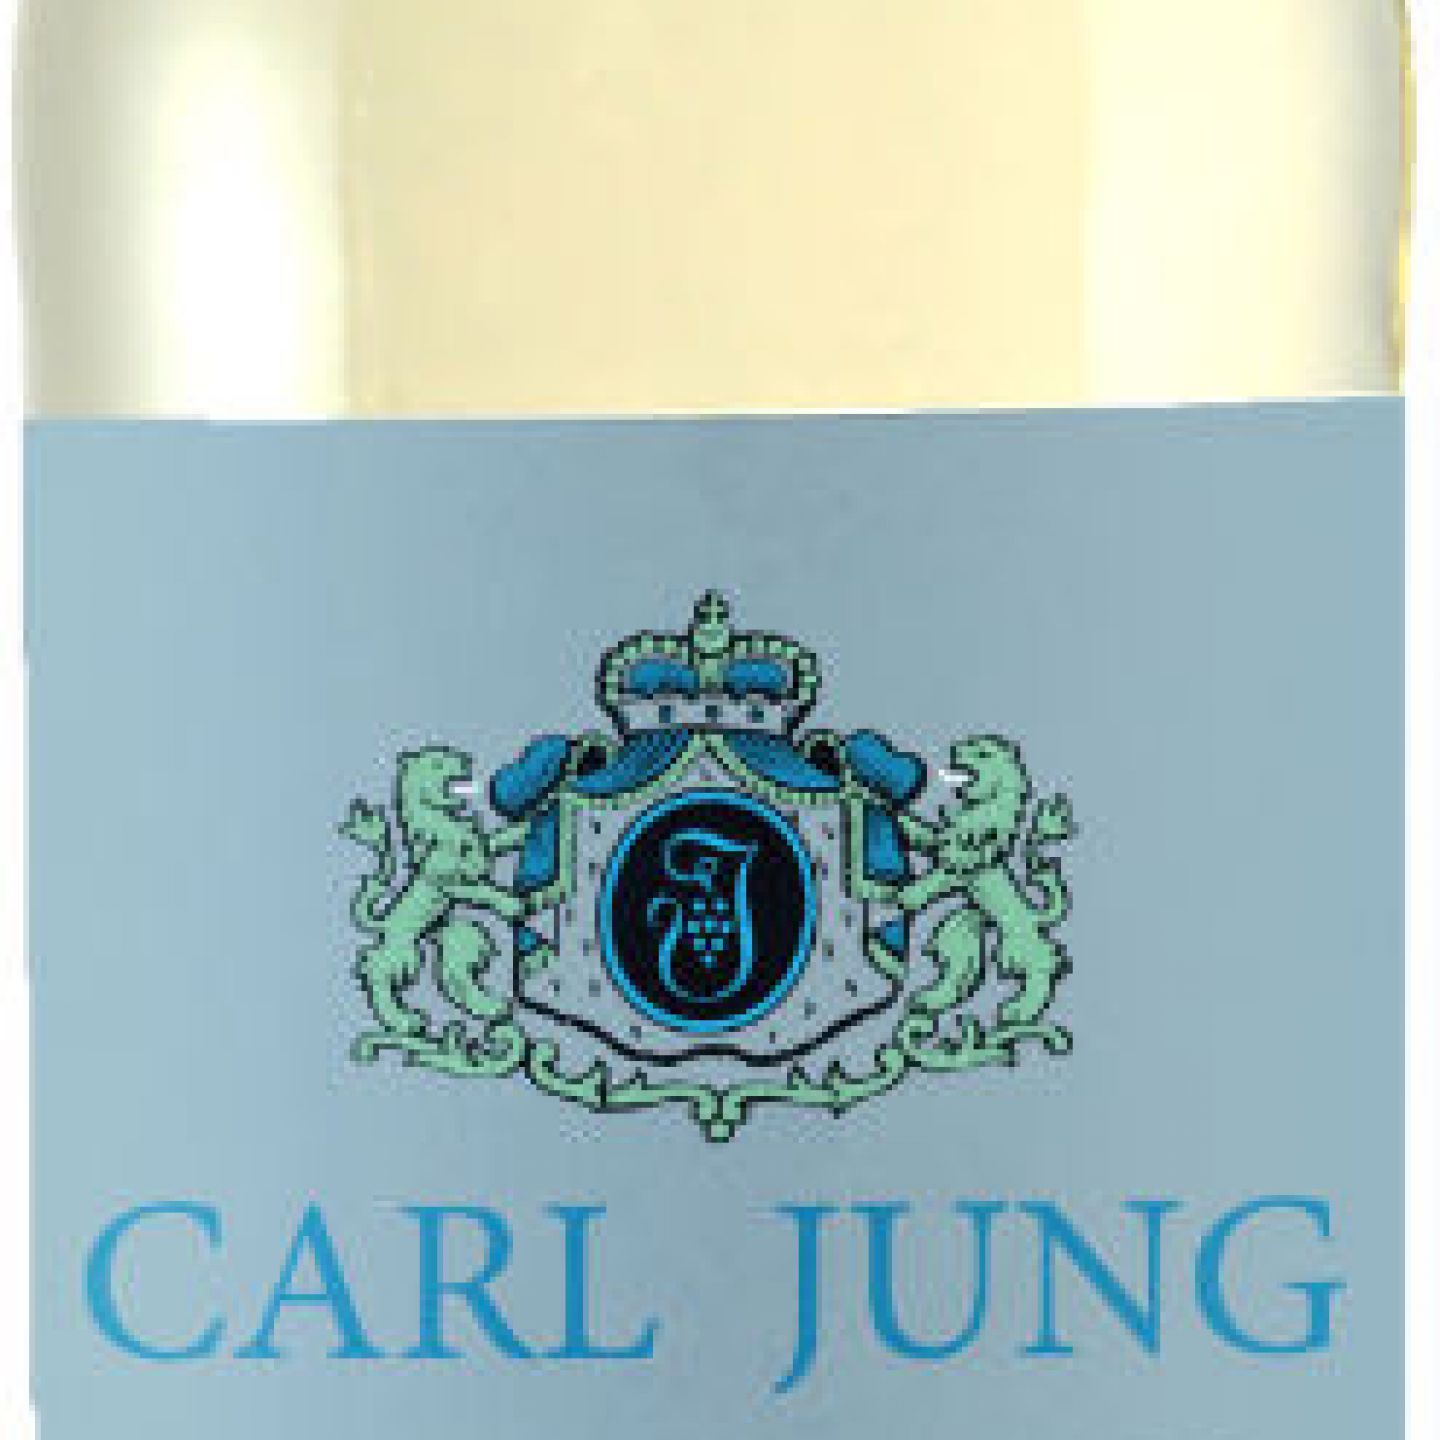 Carl Jung CHARDONNAY - alkoholfrei Standort - Marke Tulln KG Vinumis der Freiwein Bauernladen - eine VEGAN